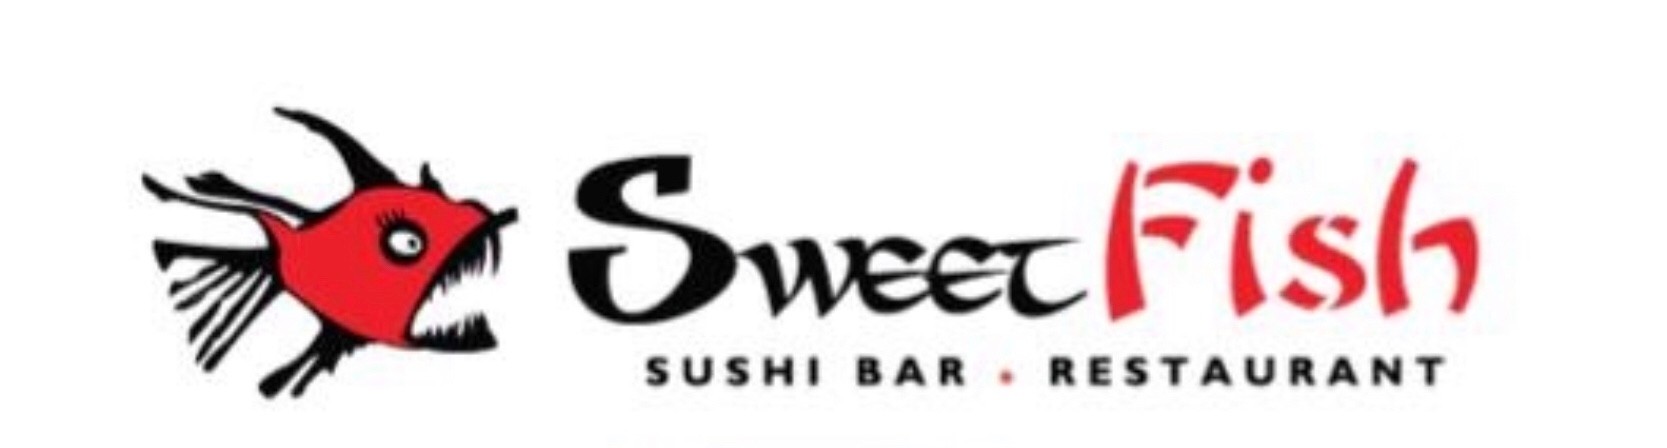 Sweet Fish Sushi Bar